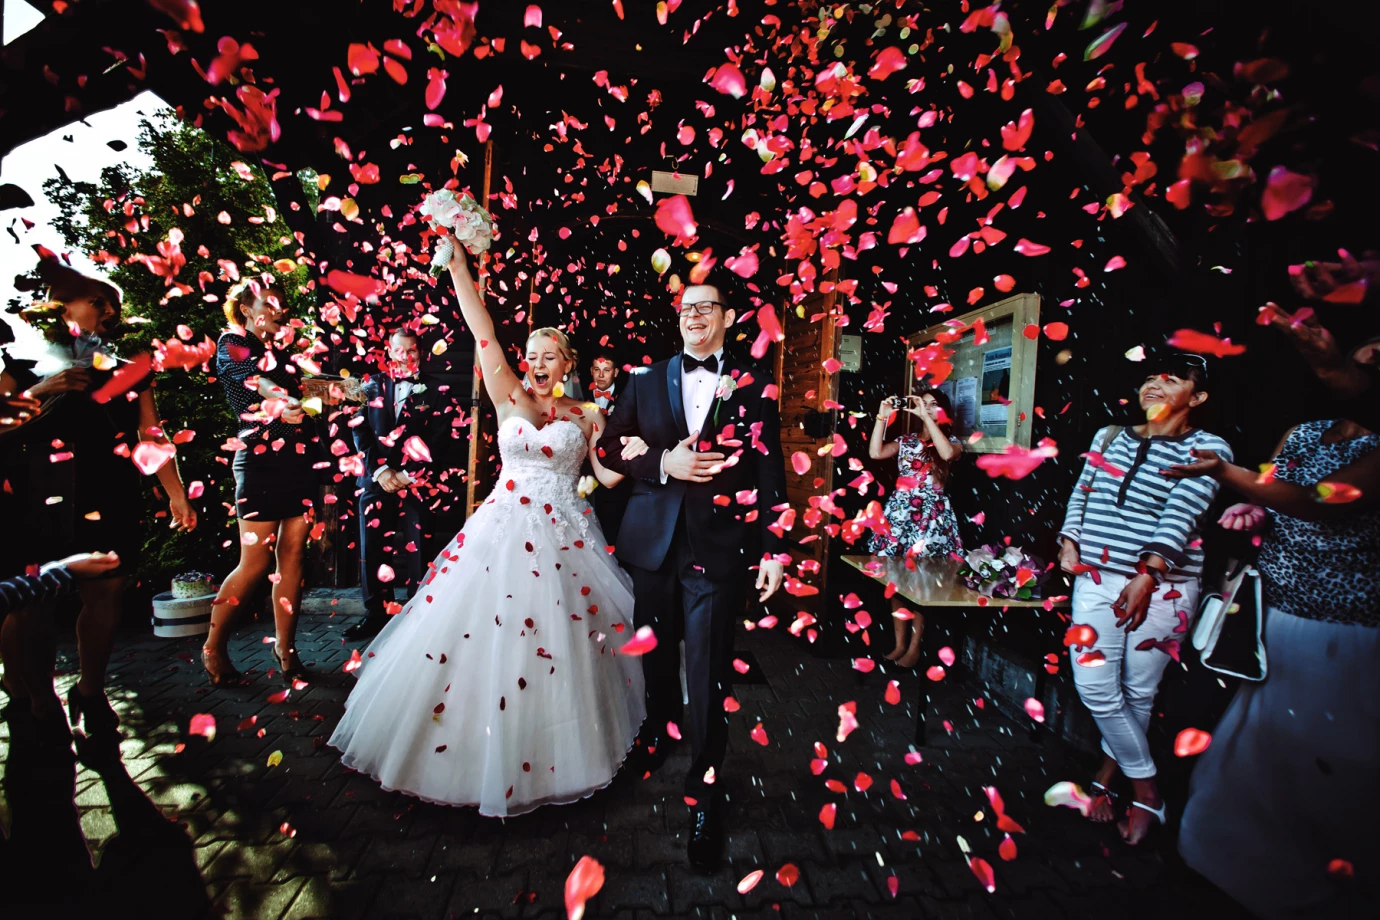 zdjęcia inowroclaw fotograf anna-szustak portfolio zdjecia slubne inspiracje wesele plener slubny sesja slubna